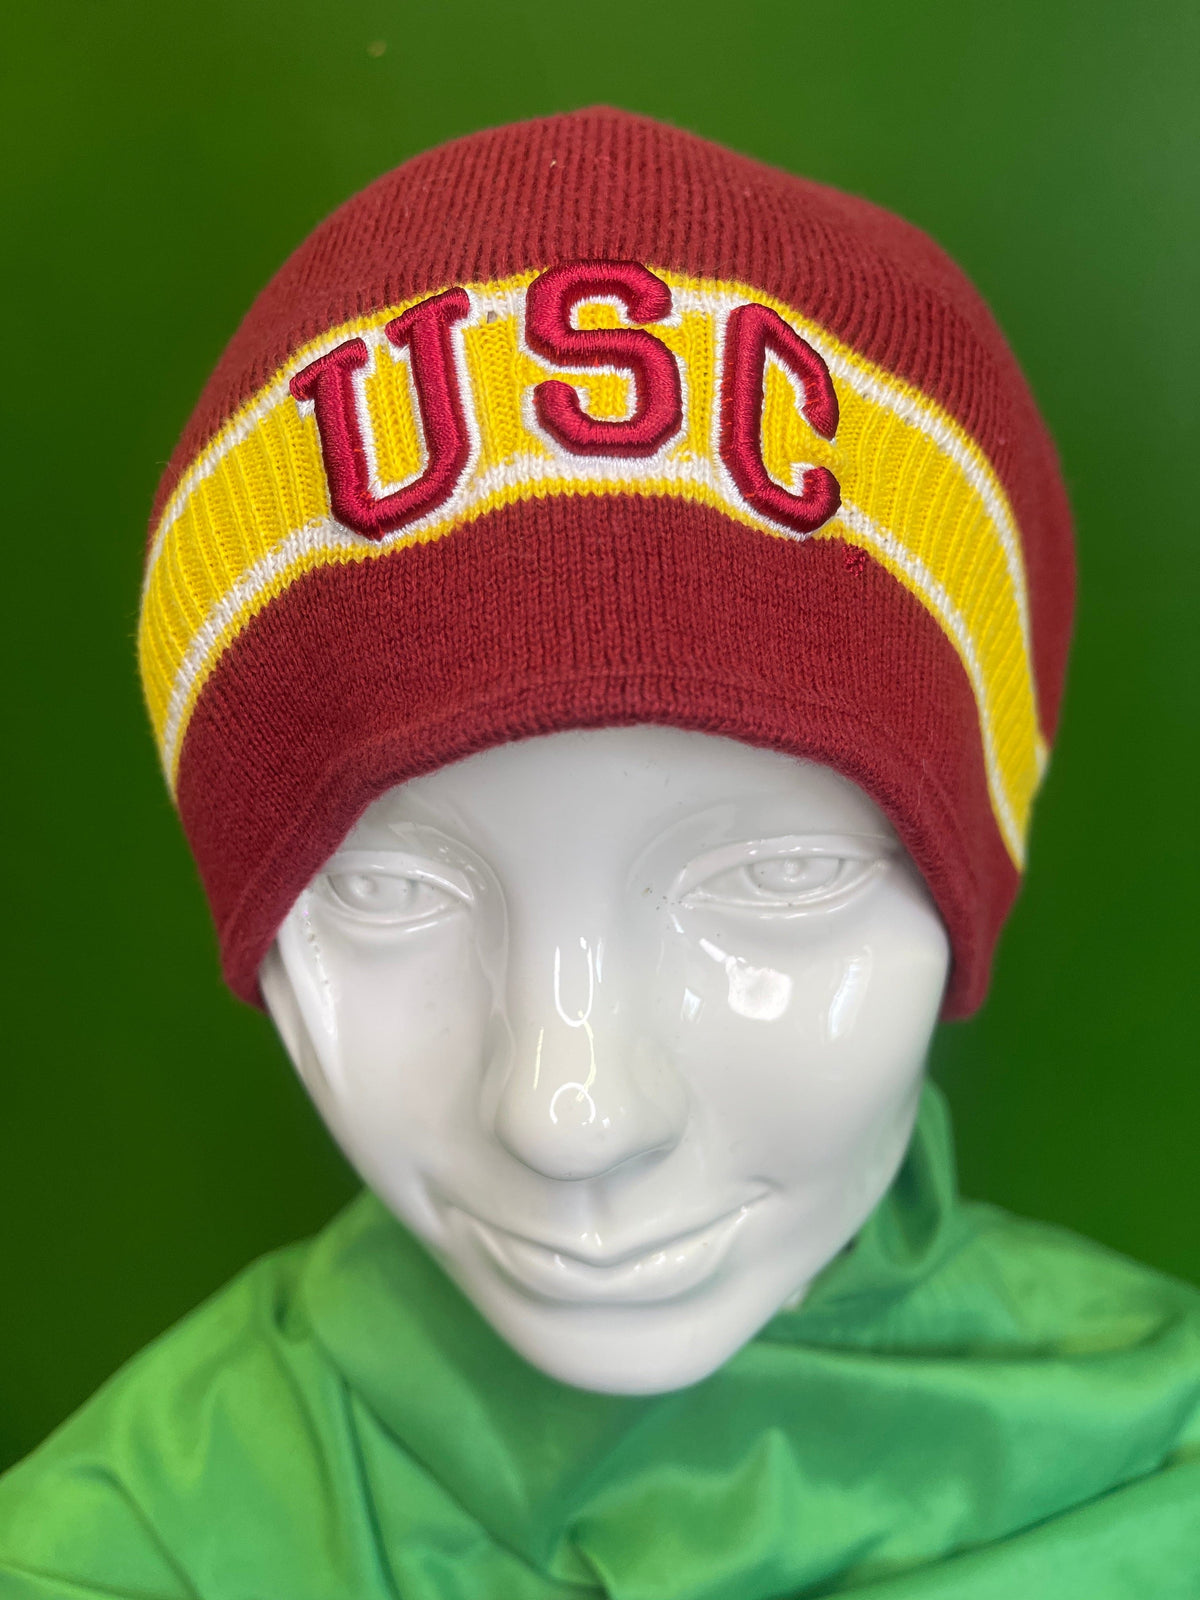 NCAA USC Trojans Woolly Hat Beanie Men's Women's OSFA